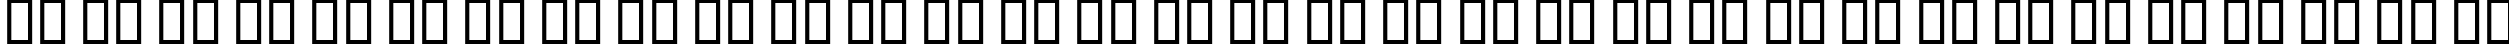 Пример написания русского алфавита шрифтом B Elham